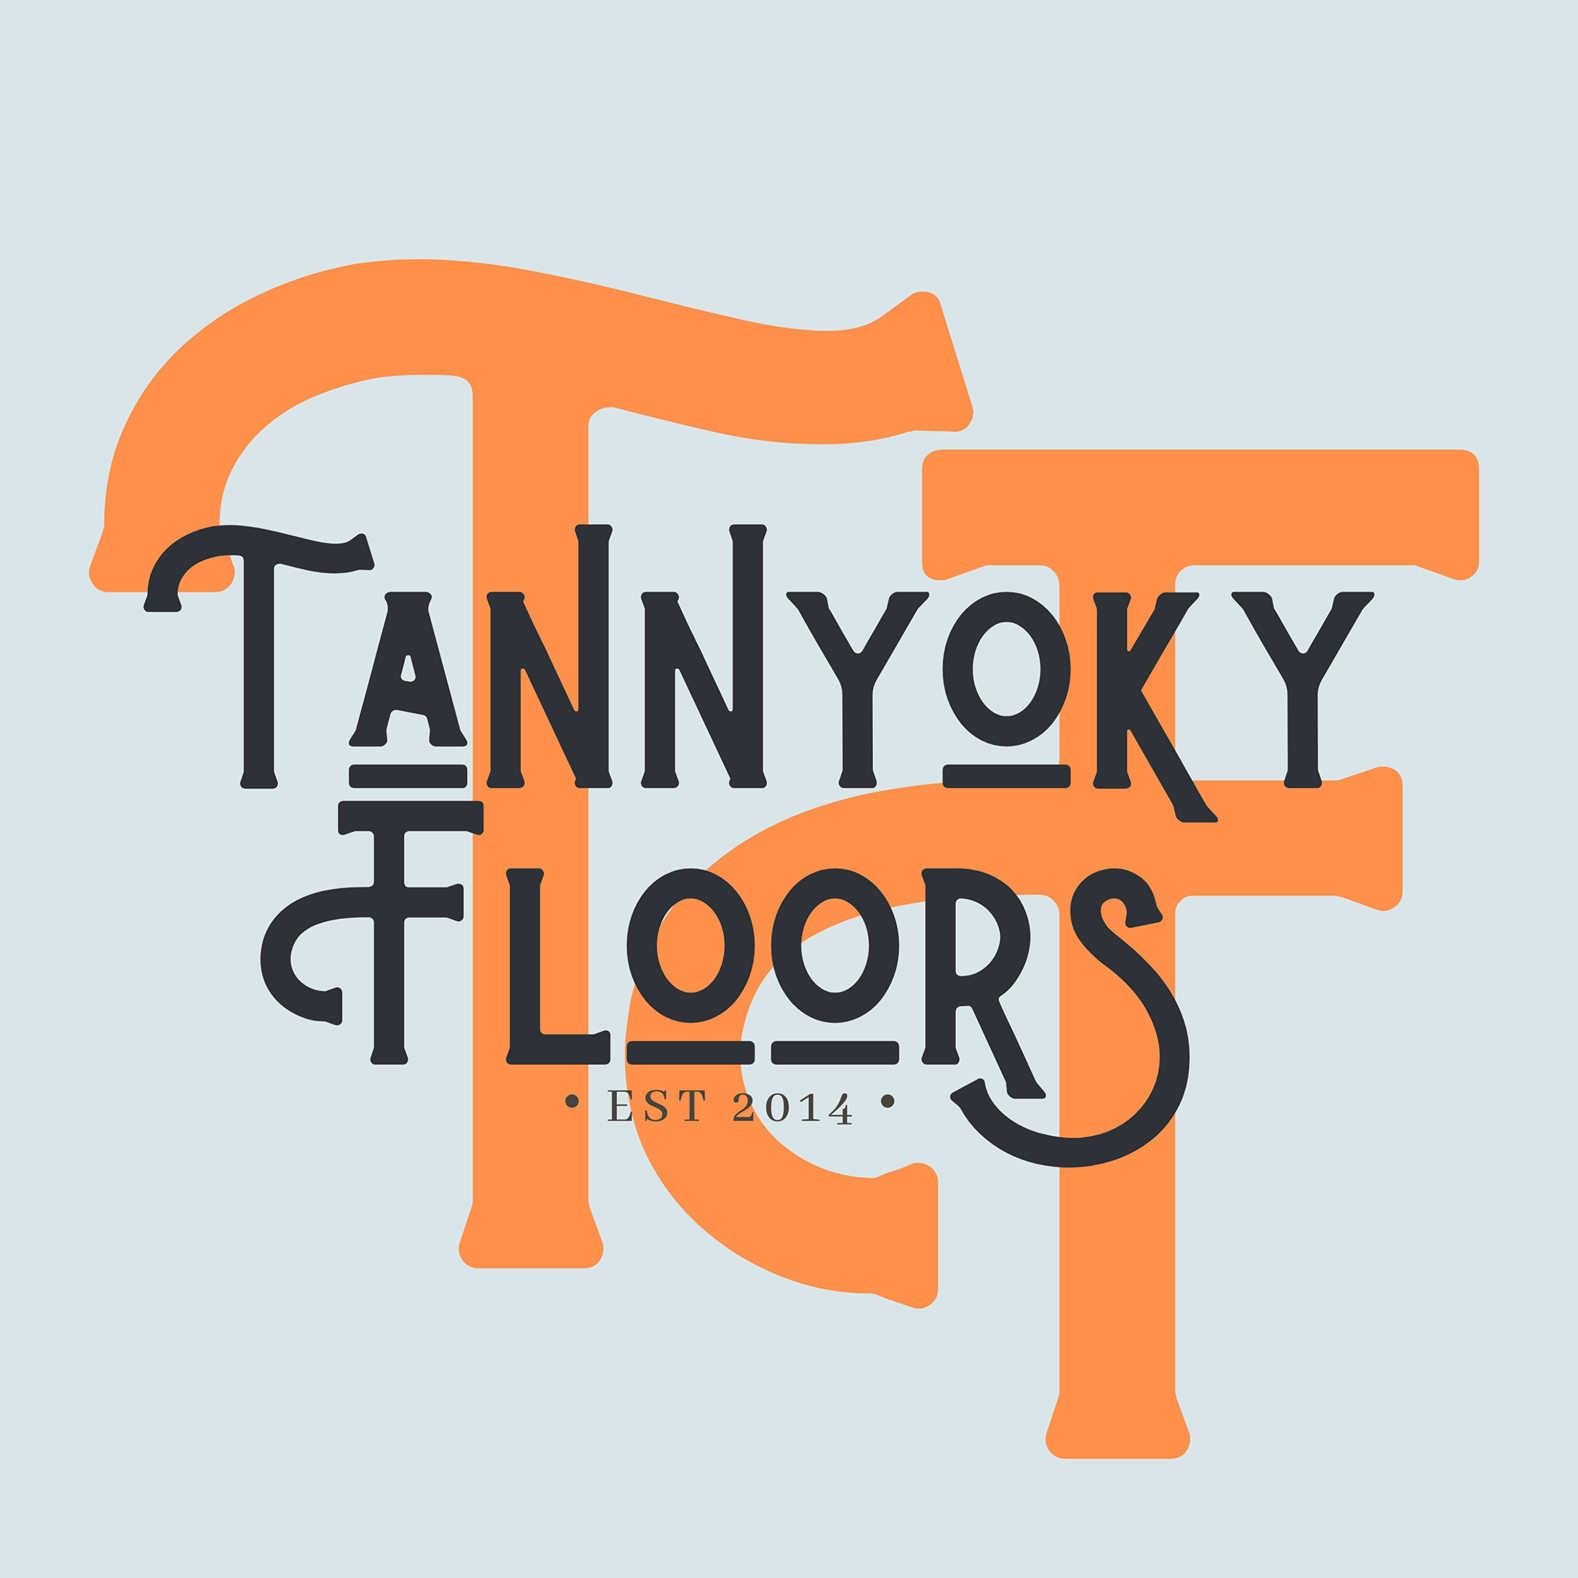 Tannyoky Floors